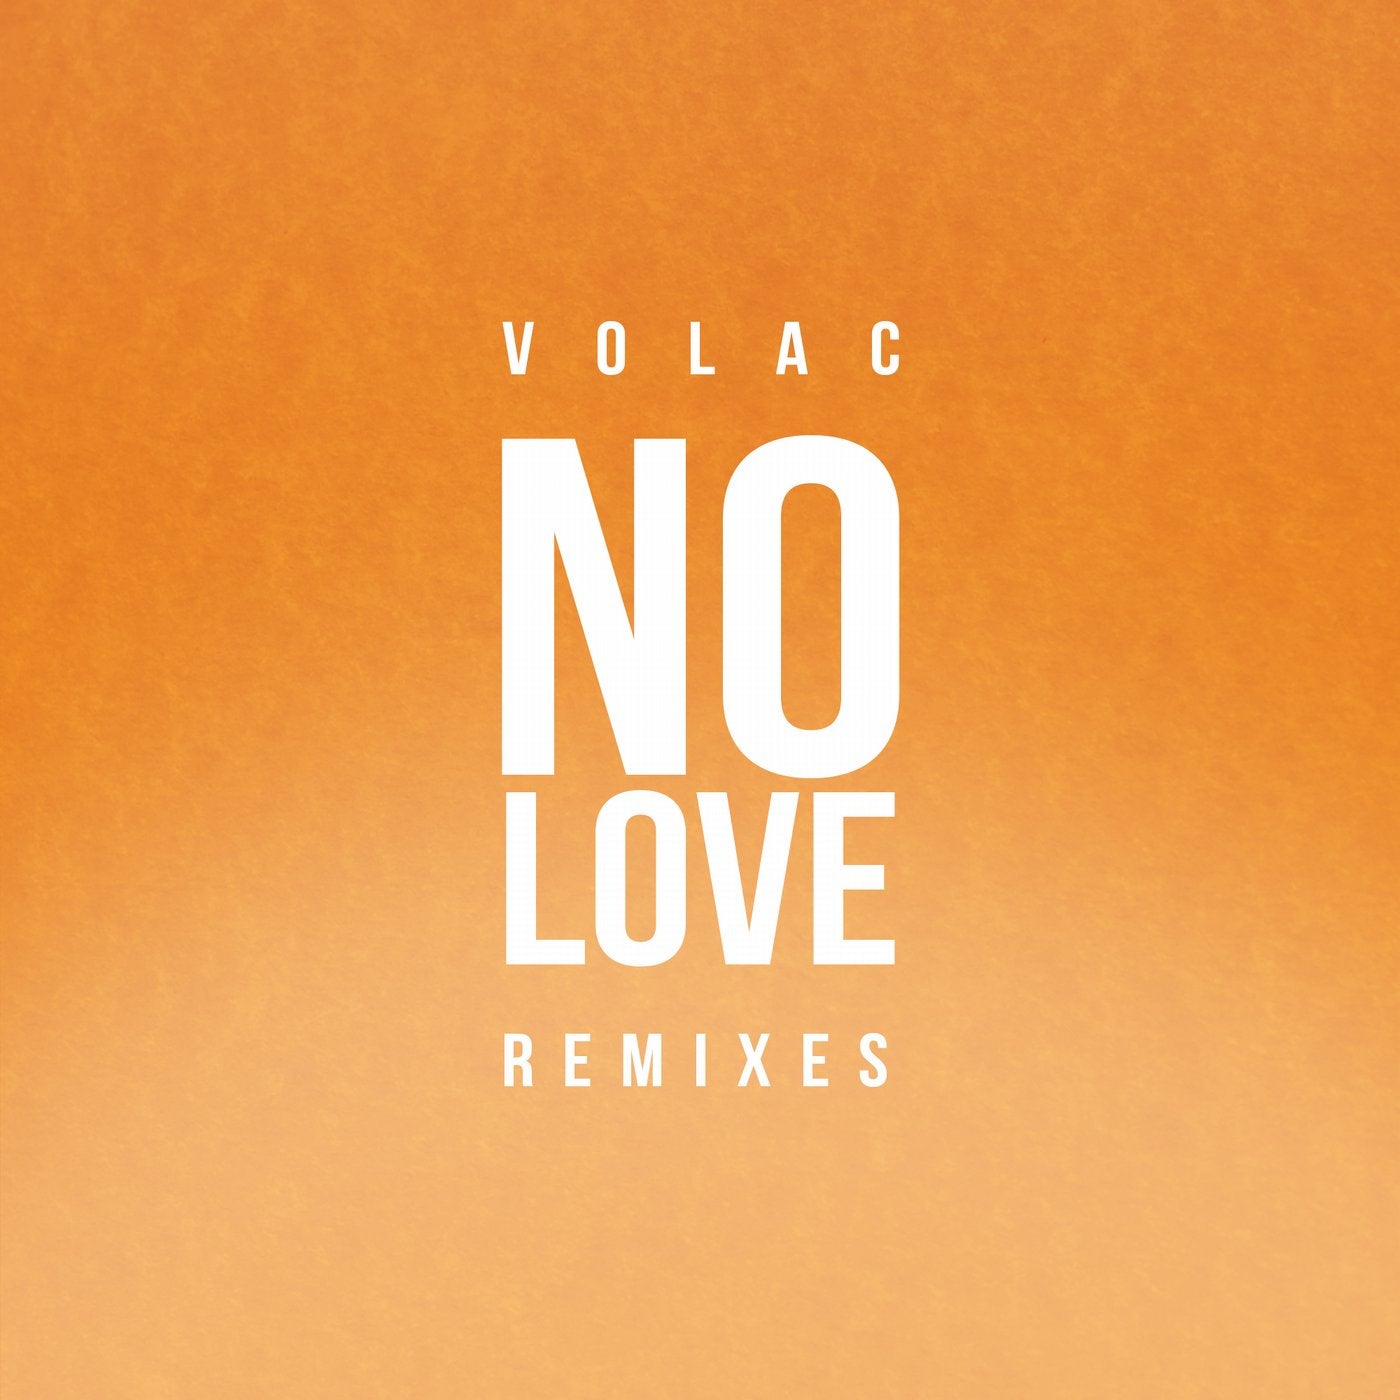 Джей лов. Фото no Love. Volac. Love Remix. Volac обложки альбома.